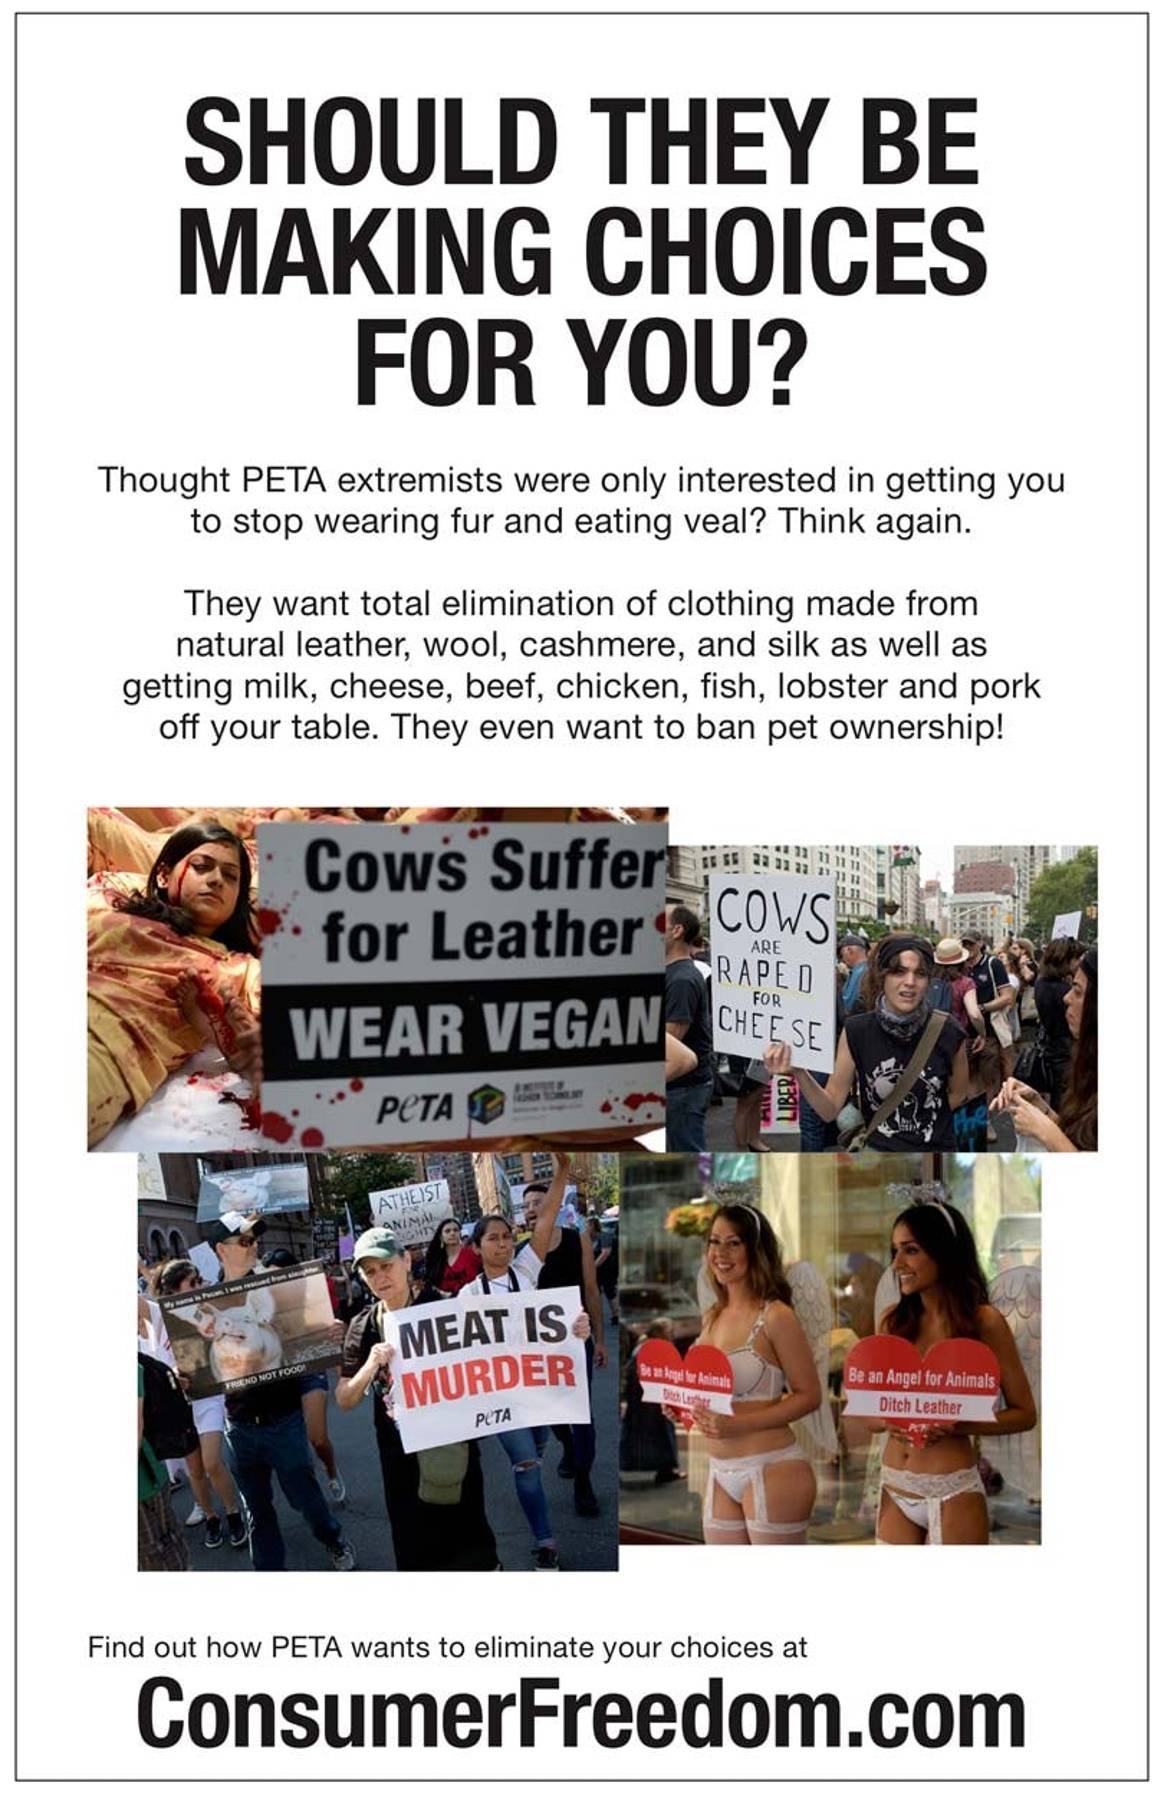 L'association PETA critiquée pour son opposition au choix du consommateur